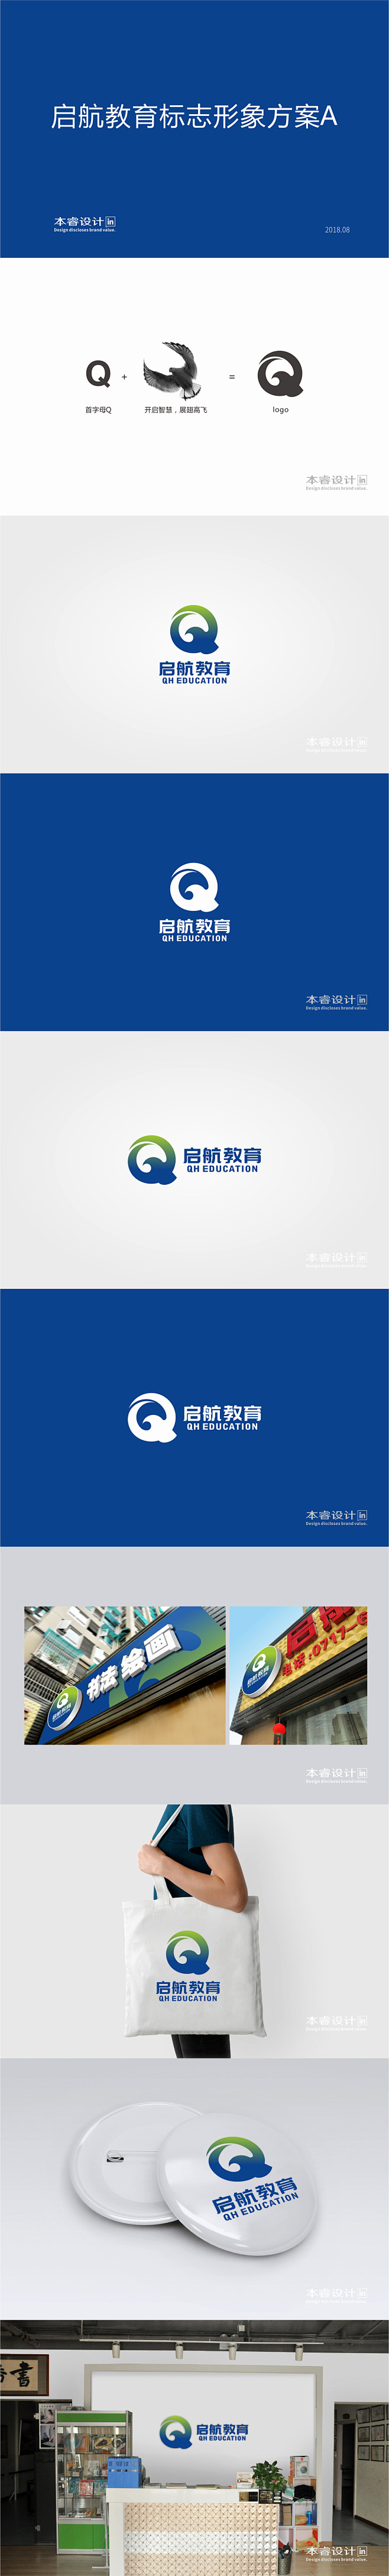 启航书店logo图片